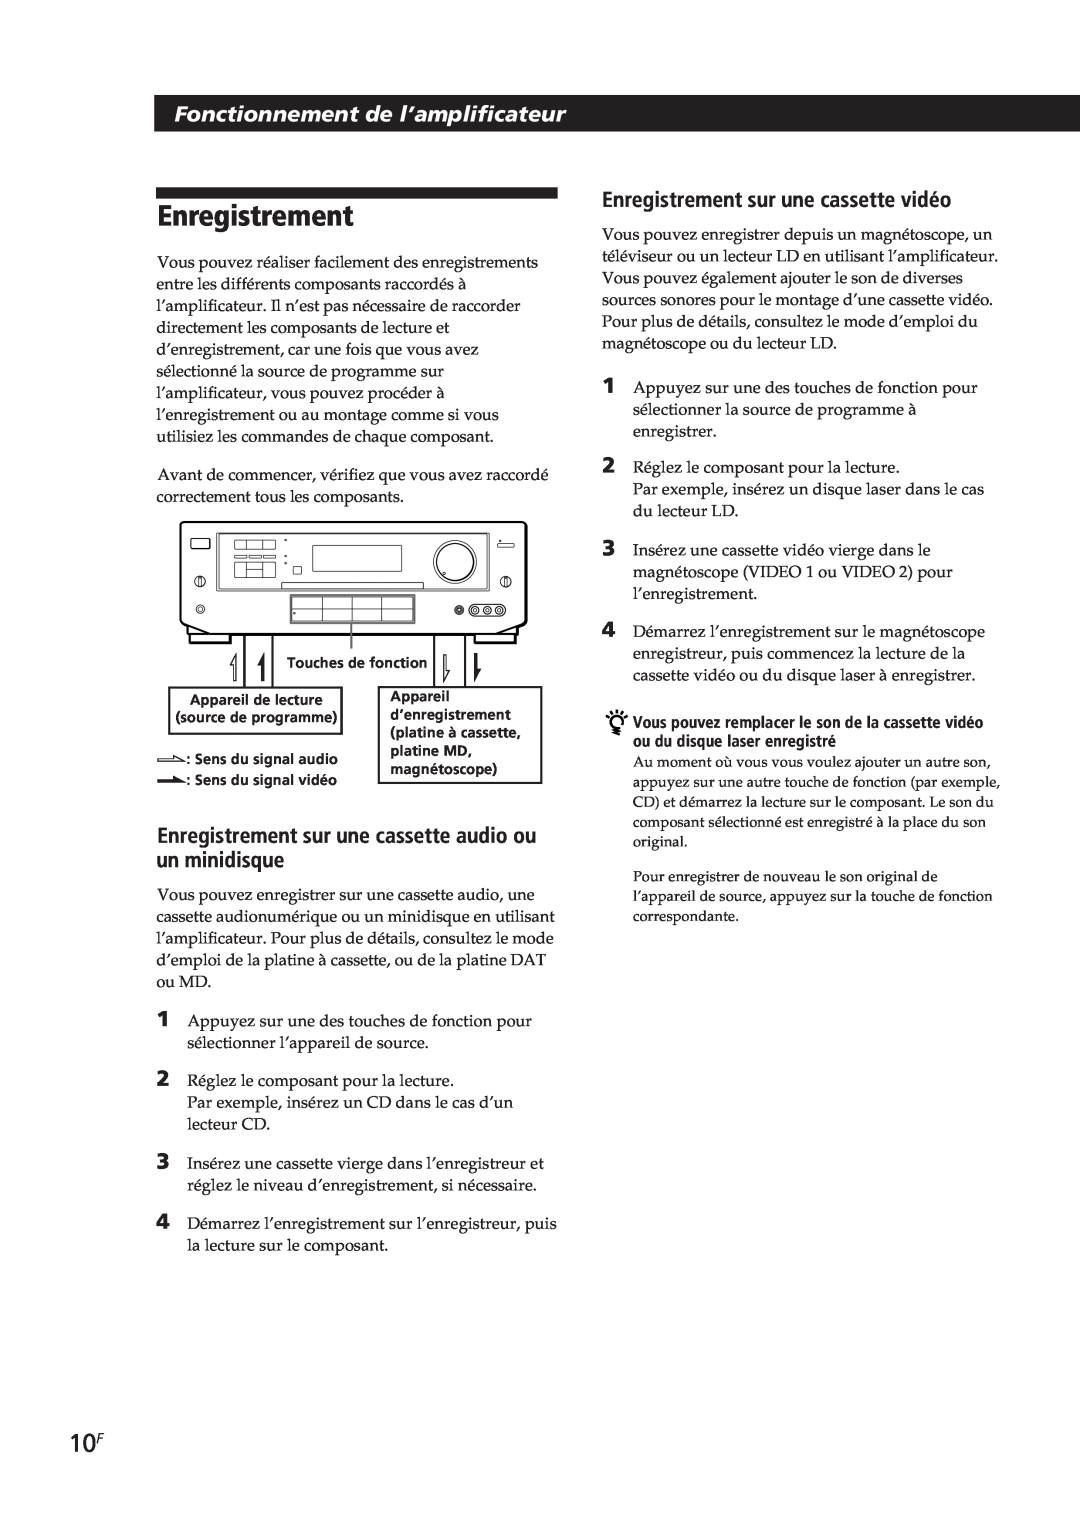 Sony TA-VE700 manual Fonctionnement de l’amplificateur, Enregistrement sur une cassette vidéo 